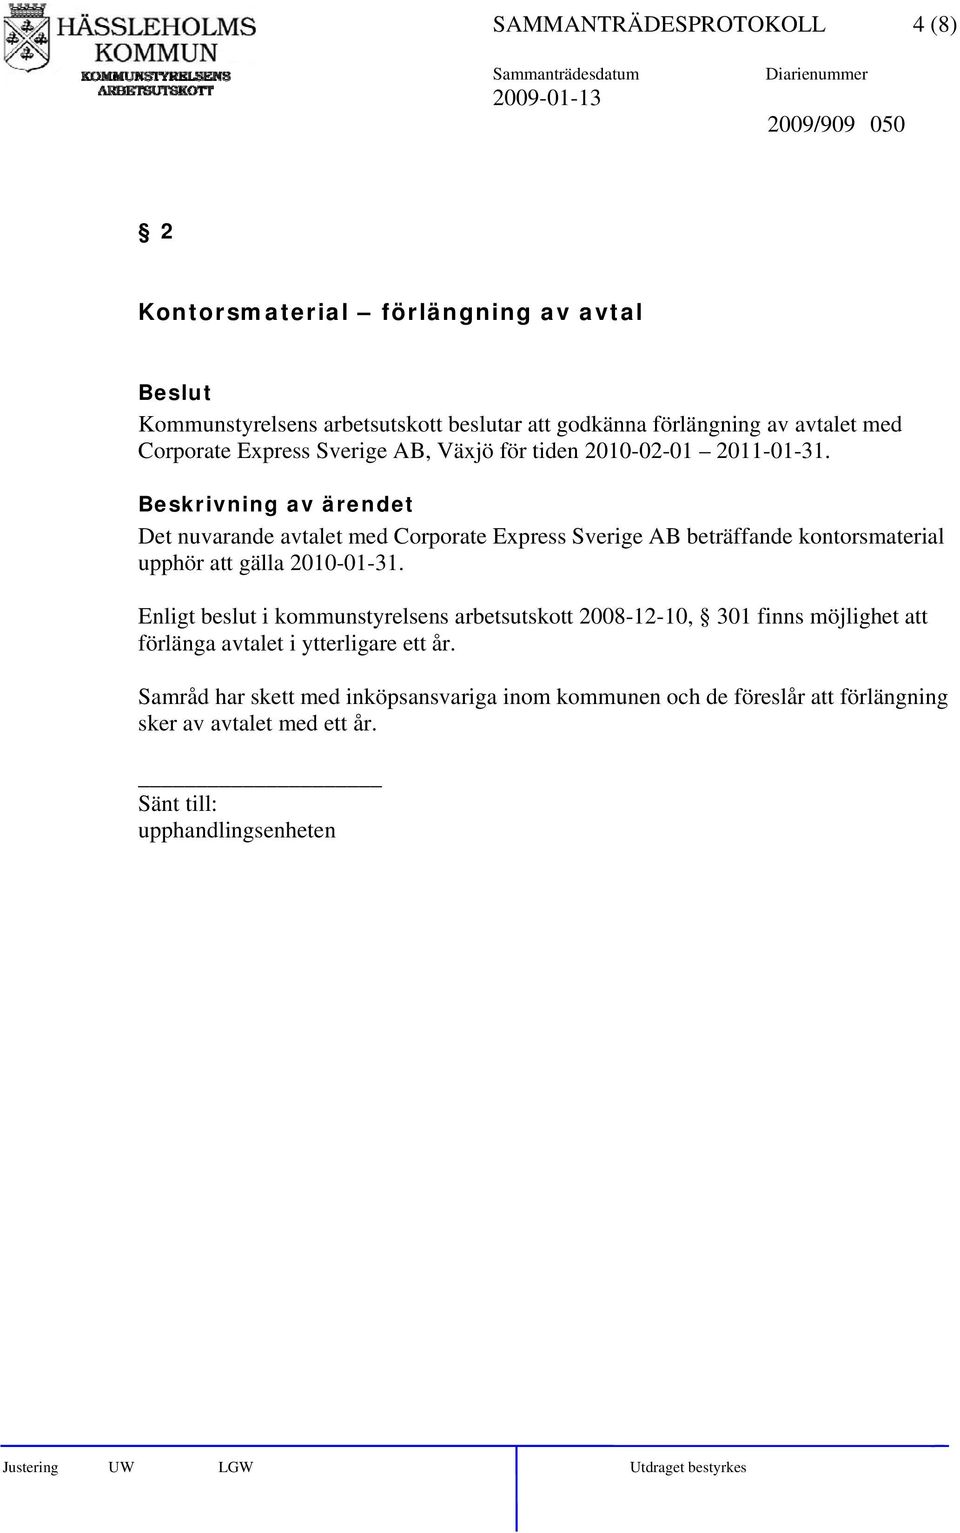 Det nuvarande avtalet med Corporate Express Sverige AB beträffande kontorsmaterial upphör att gälla 2010-01-31.